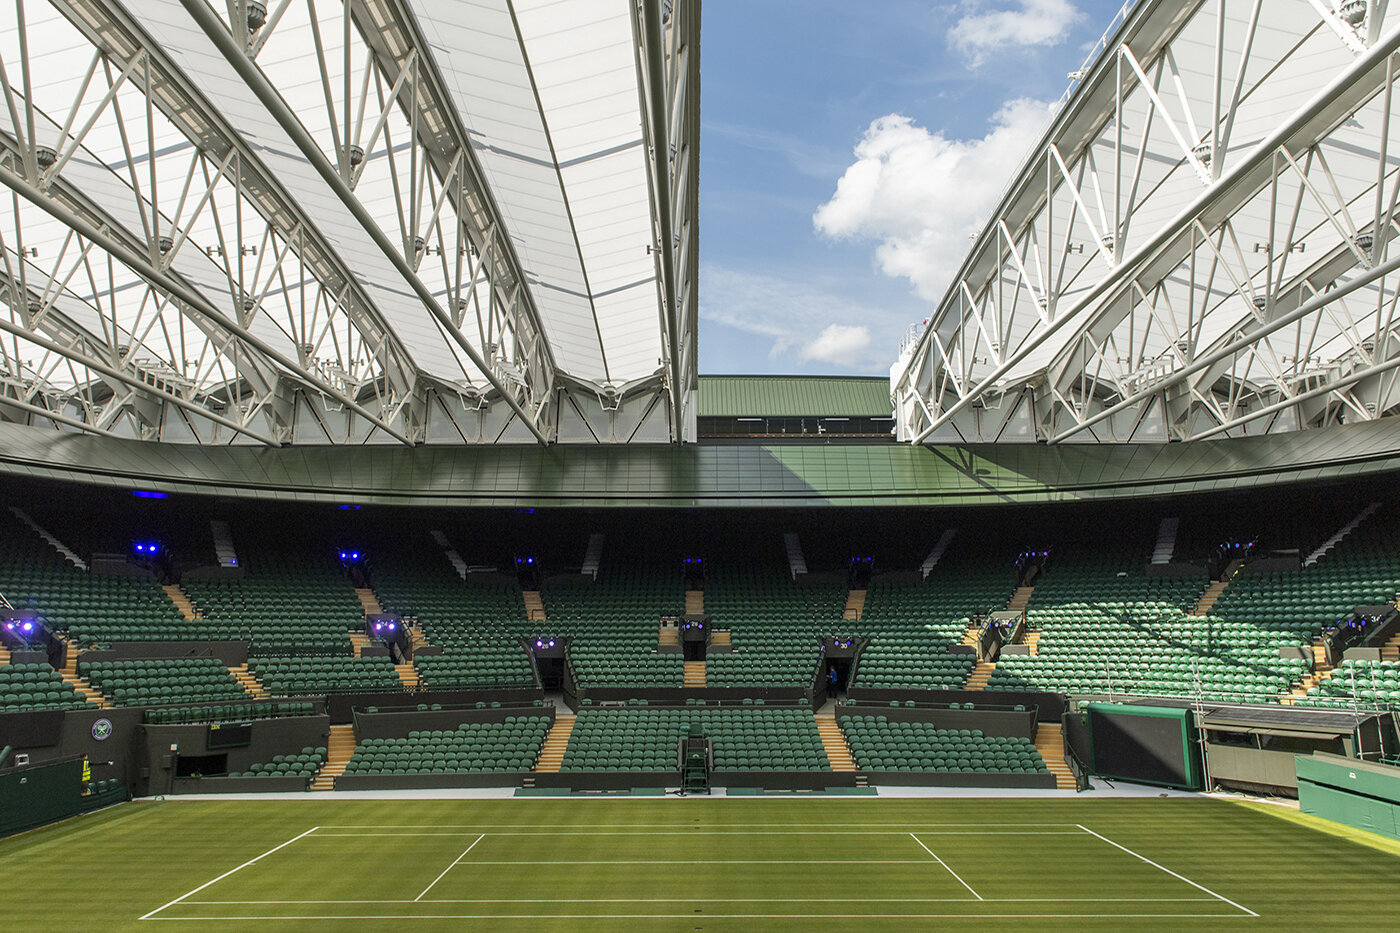 Wimbledon No 1 Court